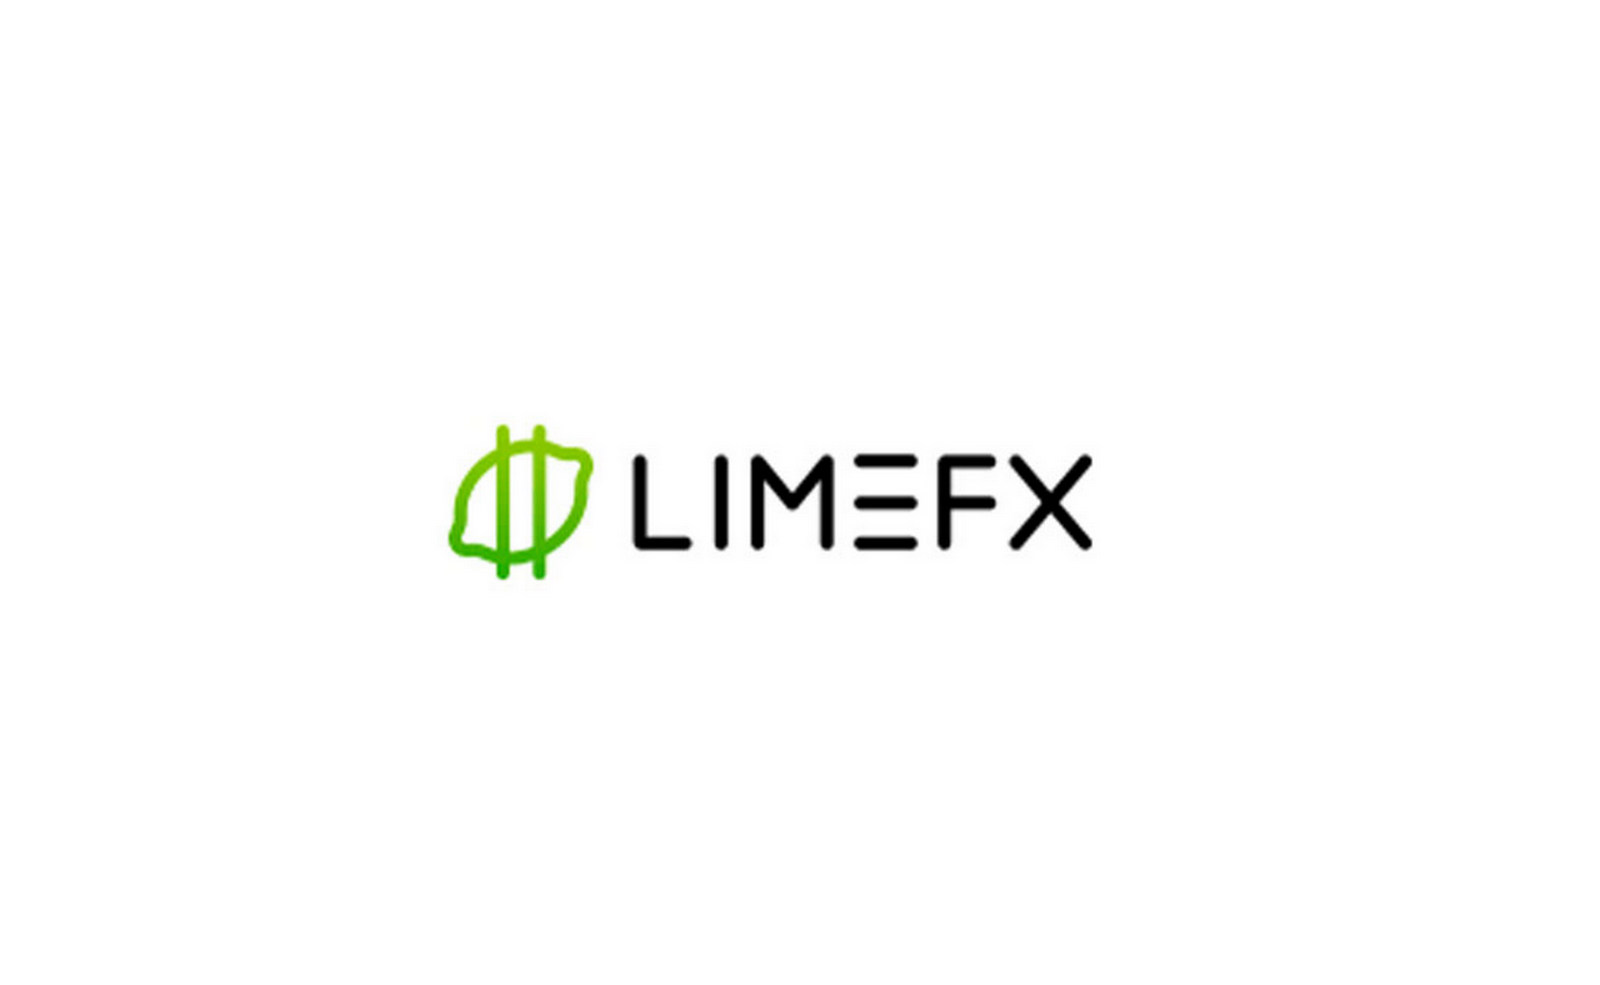 limefx мошенничества